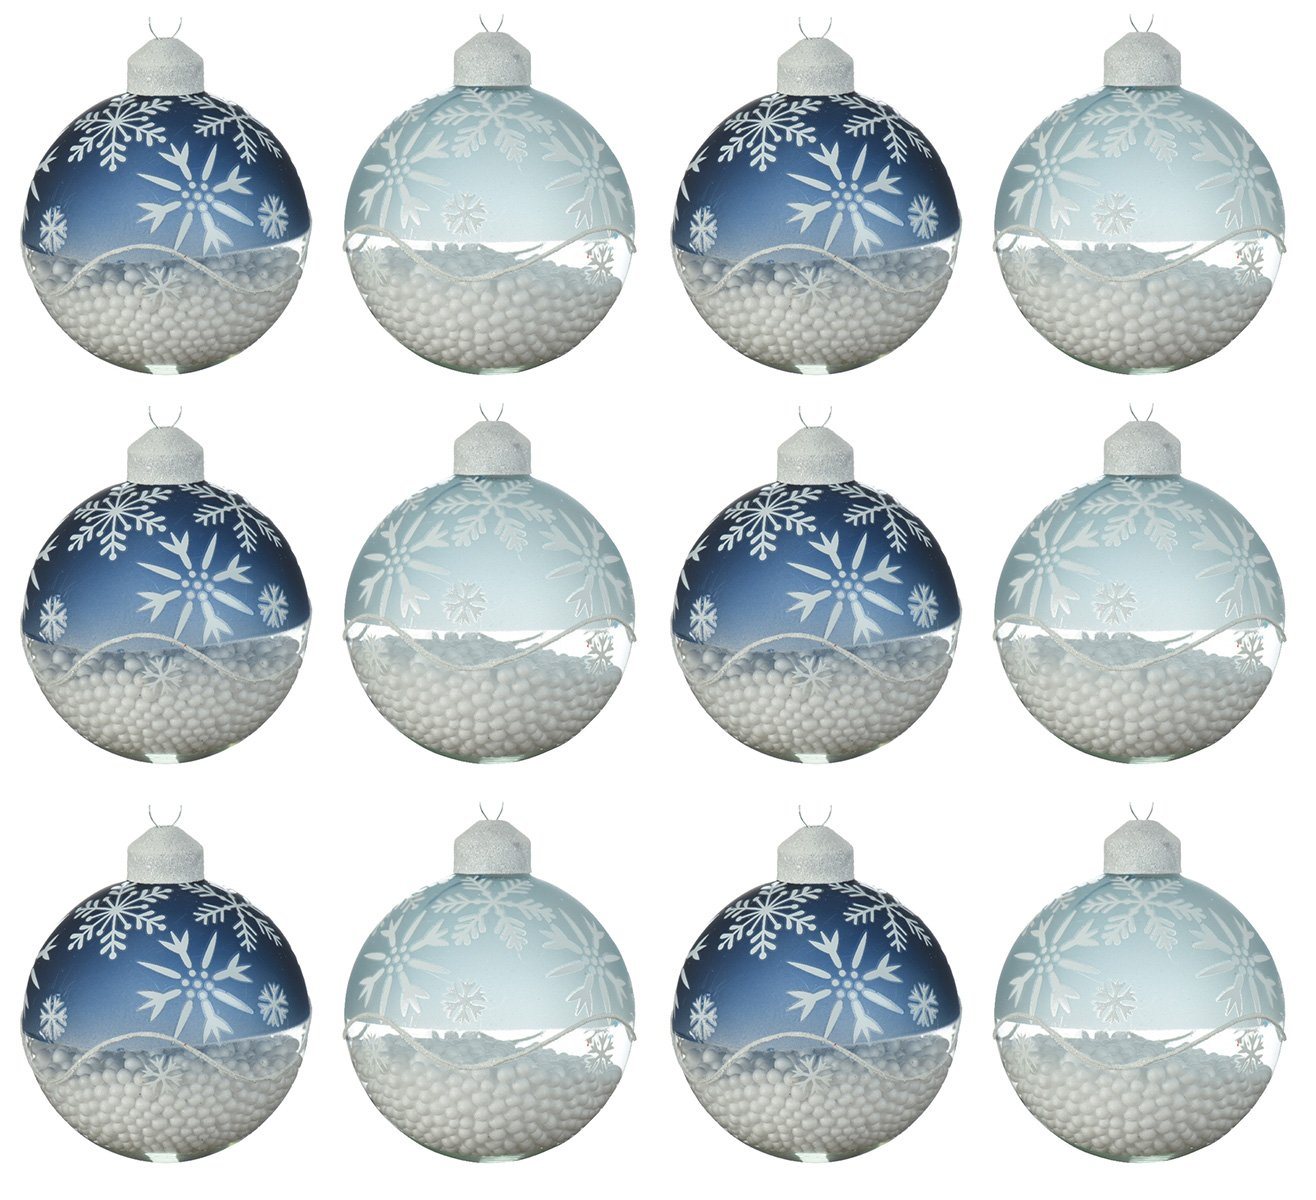 Decoris season decorations Weihnachtsbaumkugel, Weihnachtskugeln Glas 8cm mit Schneeflocken Motiv 12er Set blau mix von Decoris season decorations